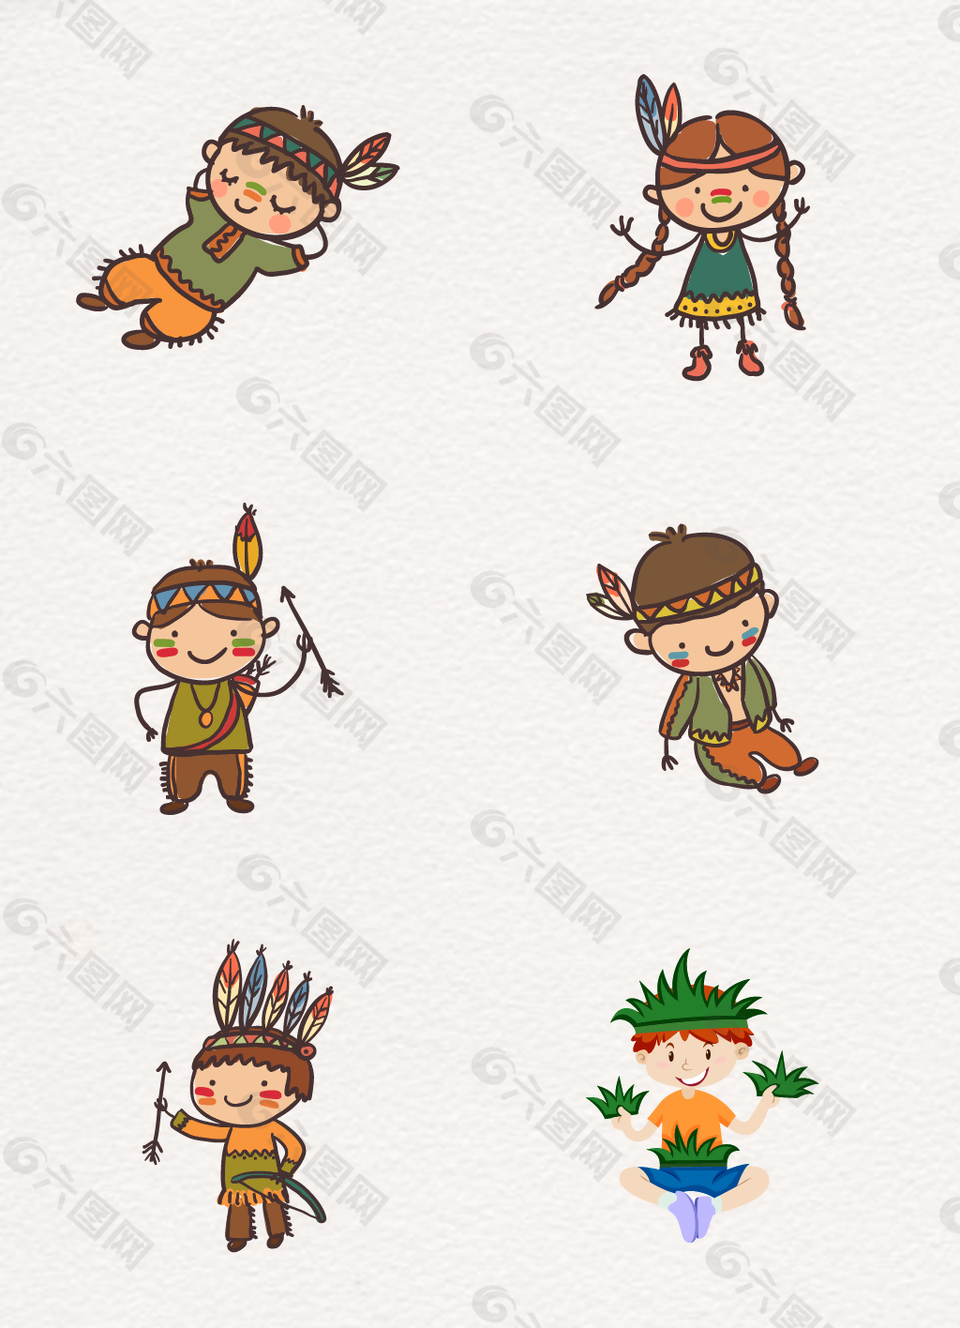 卡通部落人物装扮的儿童矢量素材合集